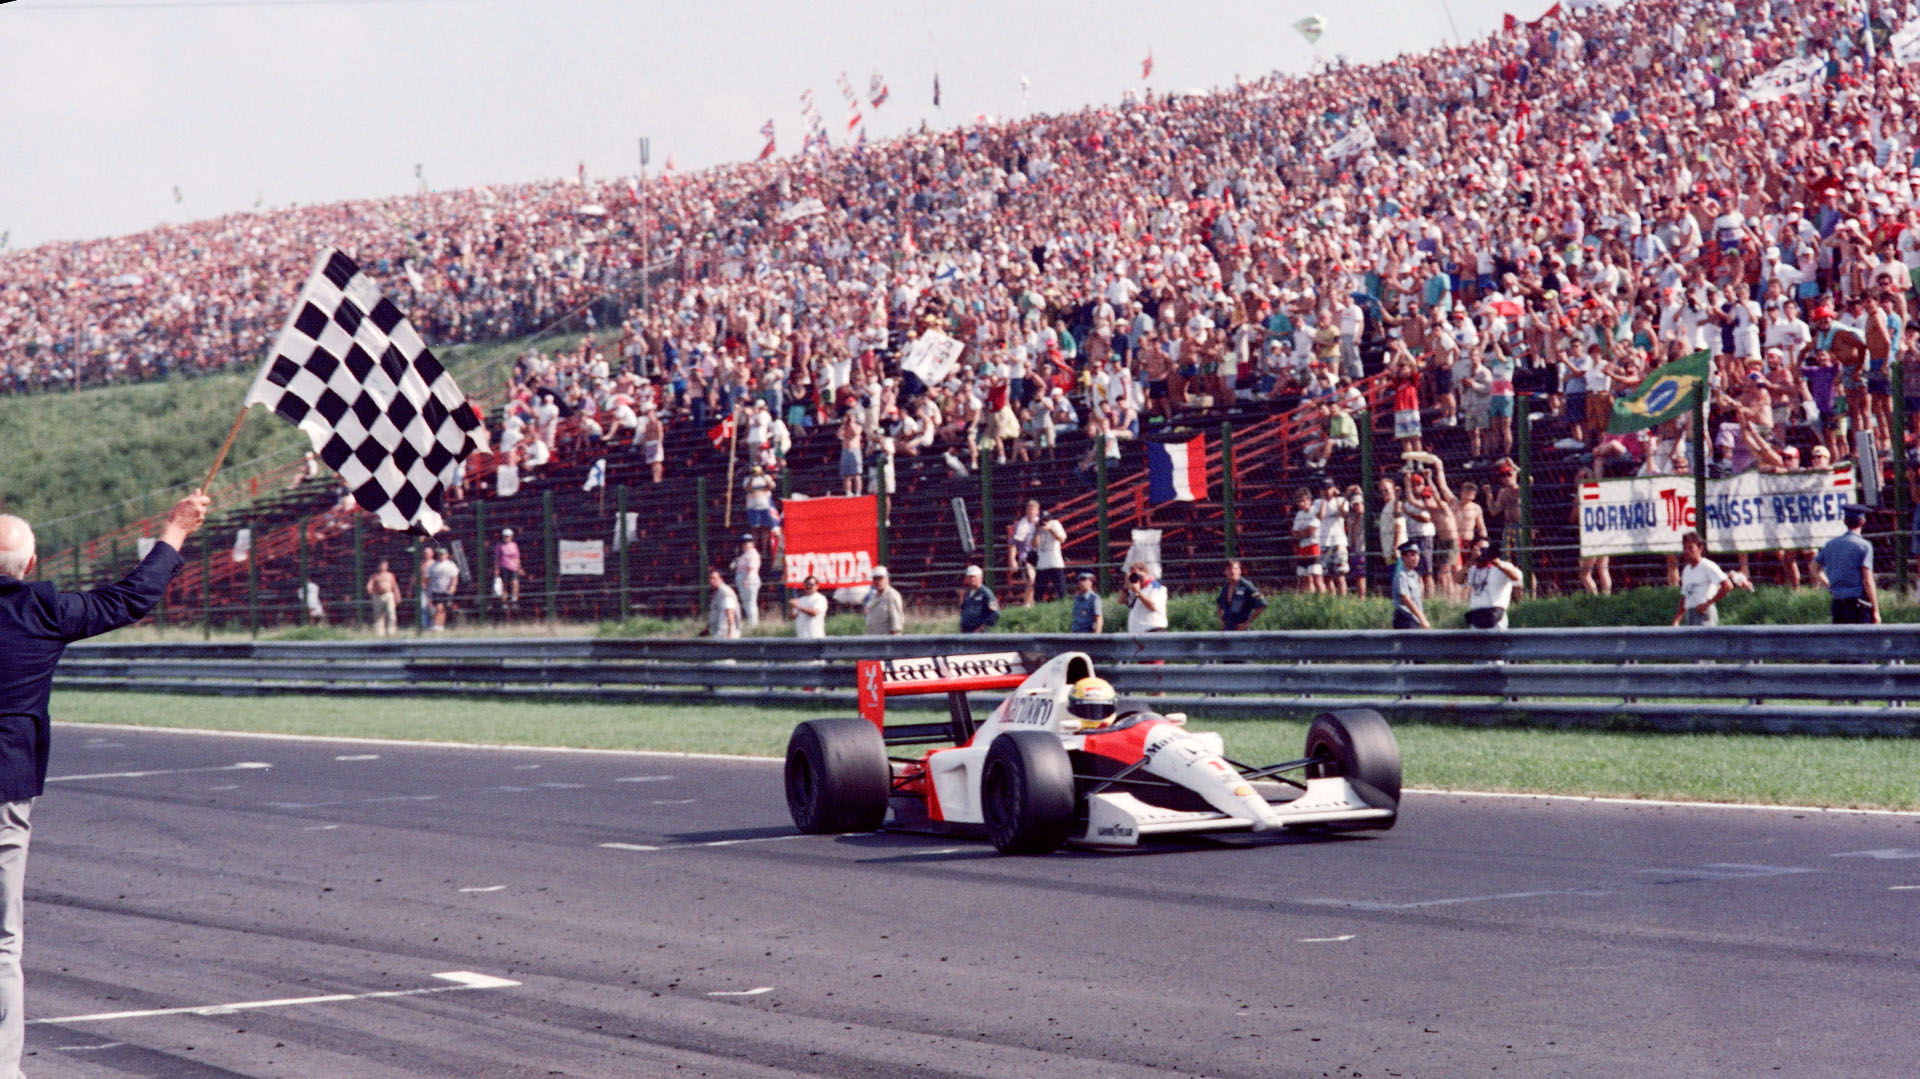 Honda no lograba un título como motorista desde la tercera conquista  Ayrton Senna en 1991, en la época dorada de la combinación McLaren-Honda. La imagen es del triunfo del brasileño en Hungría (Photo by Jean-Loup GAUTREAU / AFP)